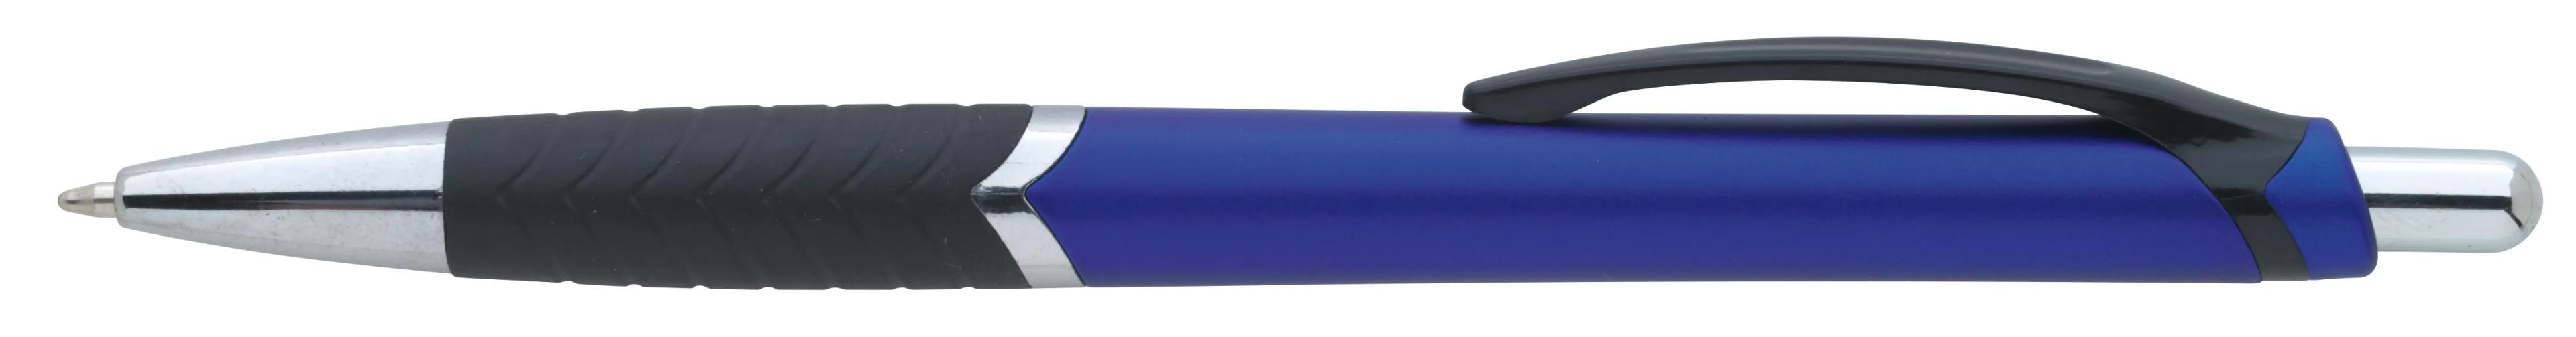 Arrow Metallic Pen 4 of 43